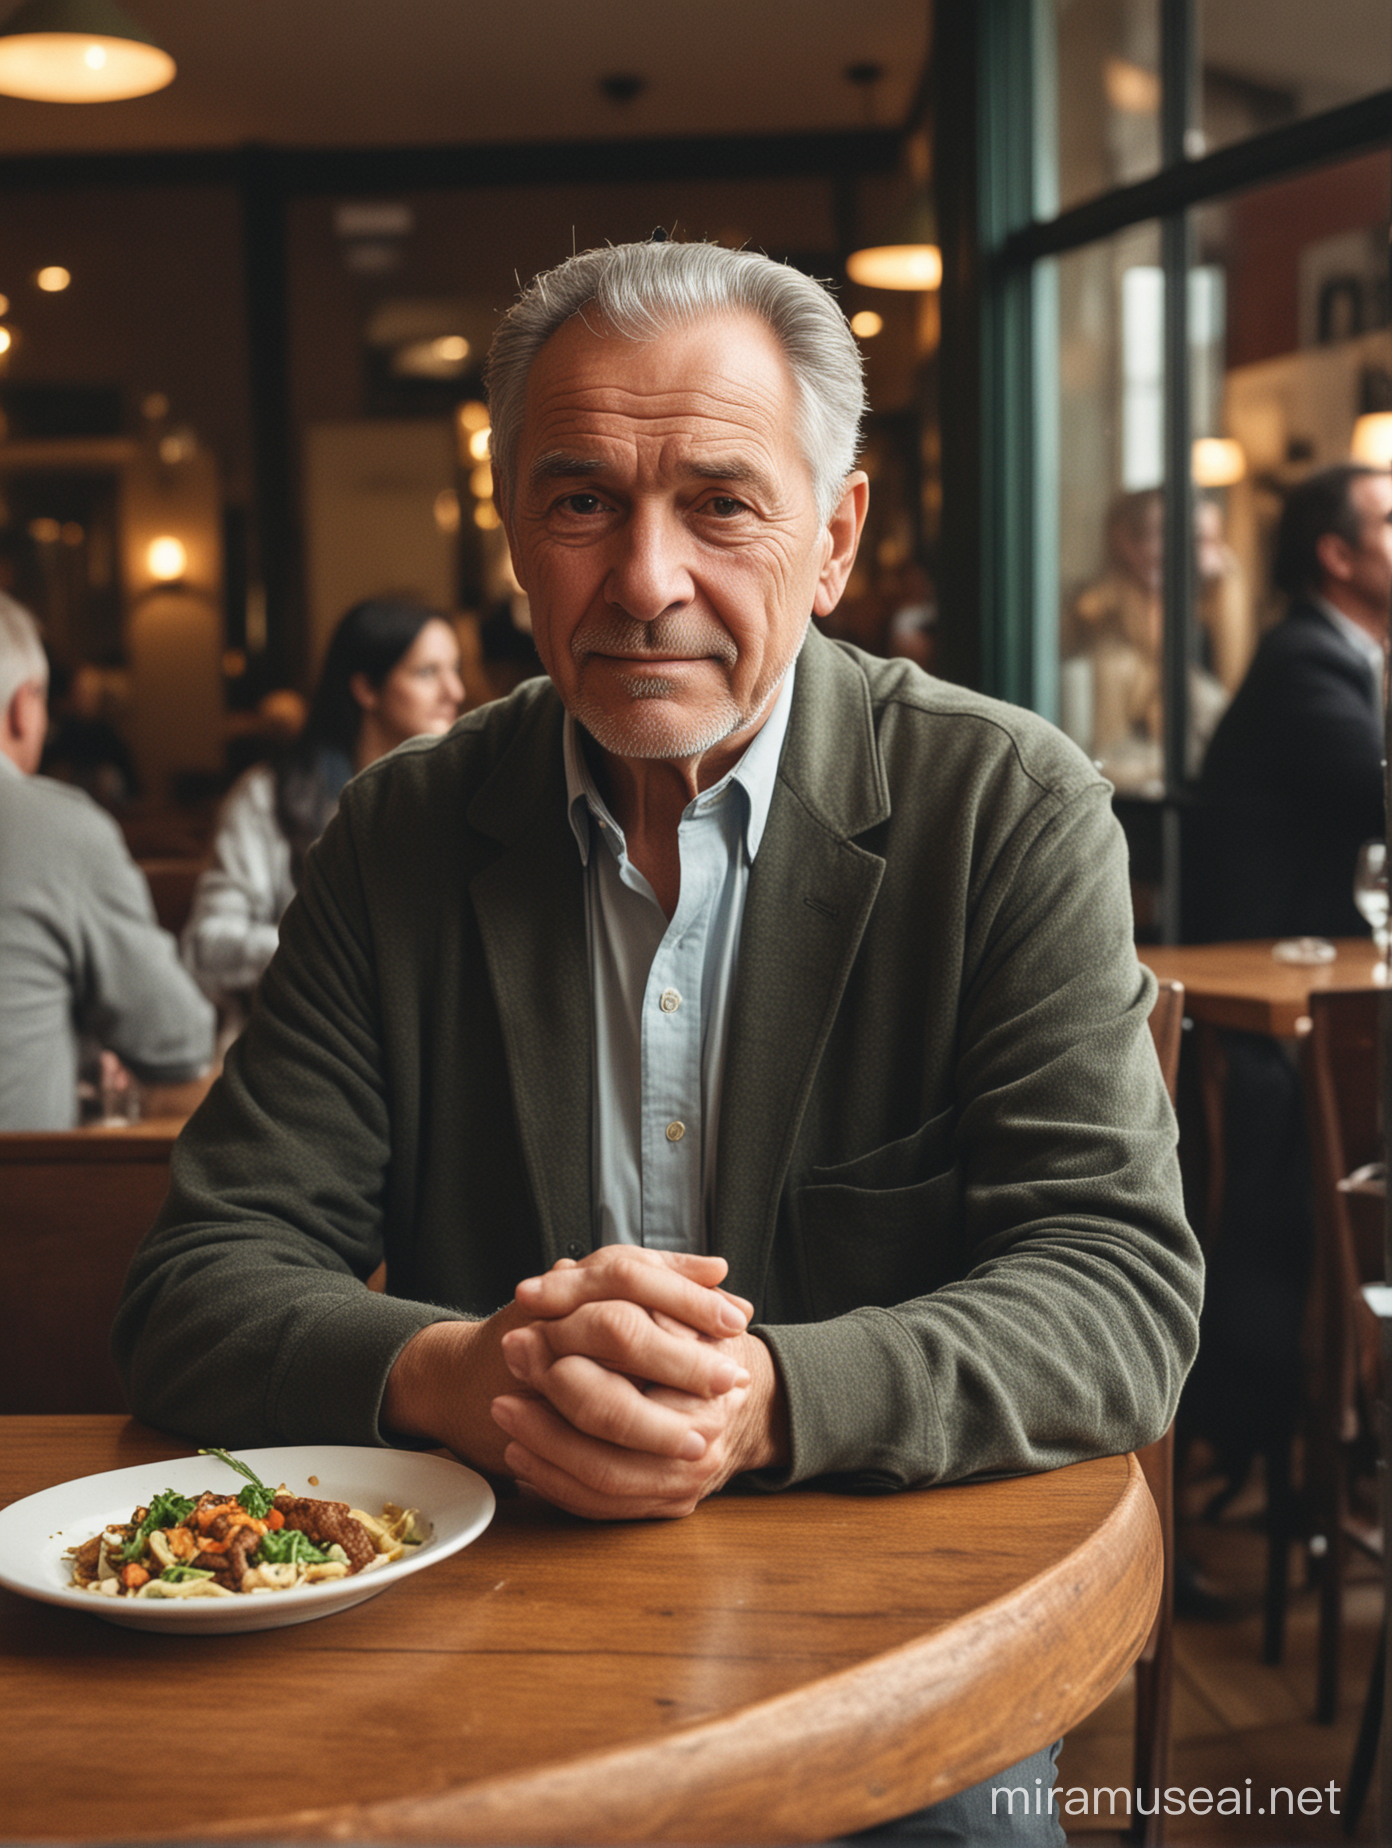 En restaurang fullt med blandade folk, en äldre man i 55 års åldern sitter vid ett bord ensam.